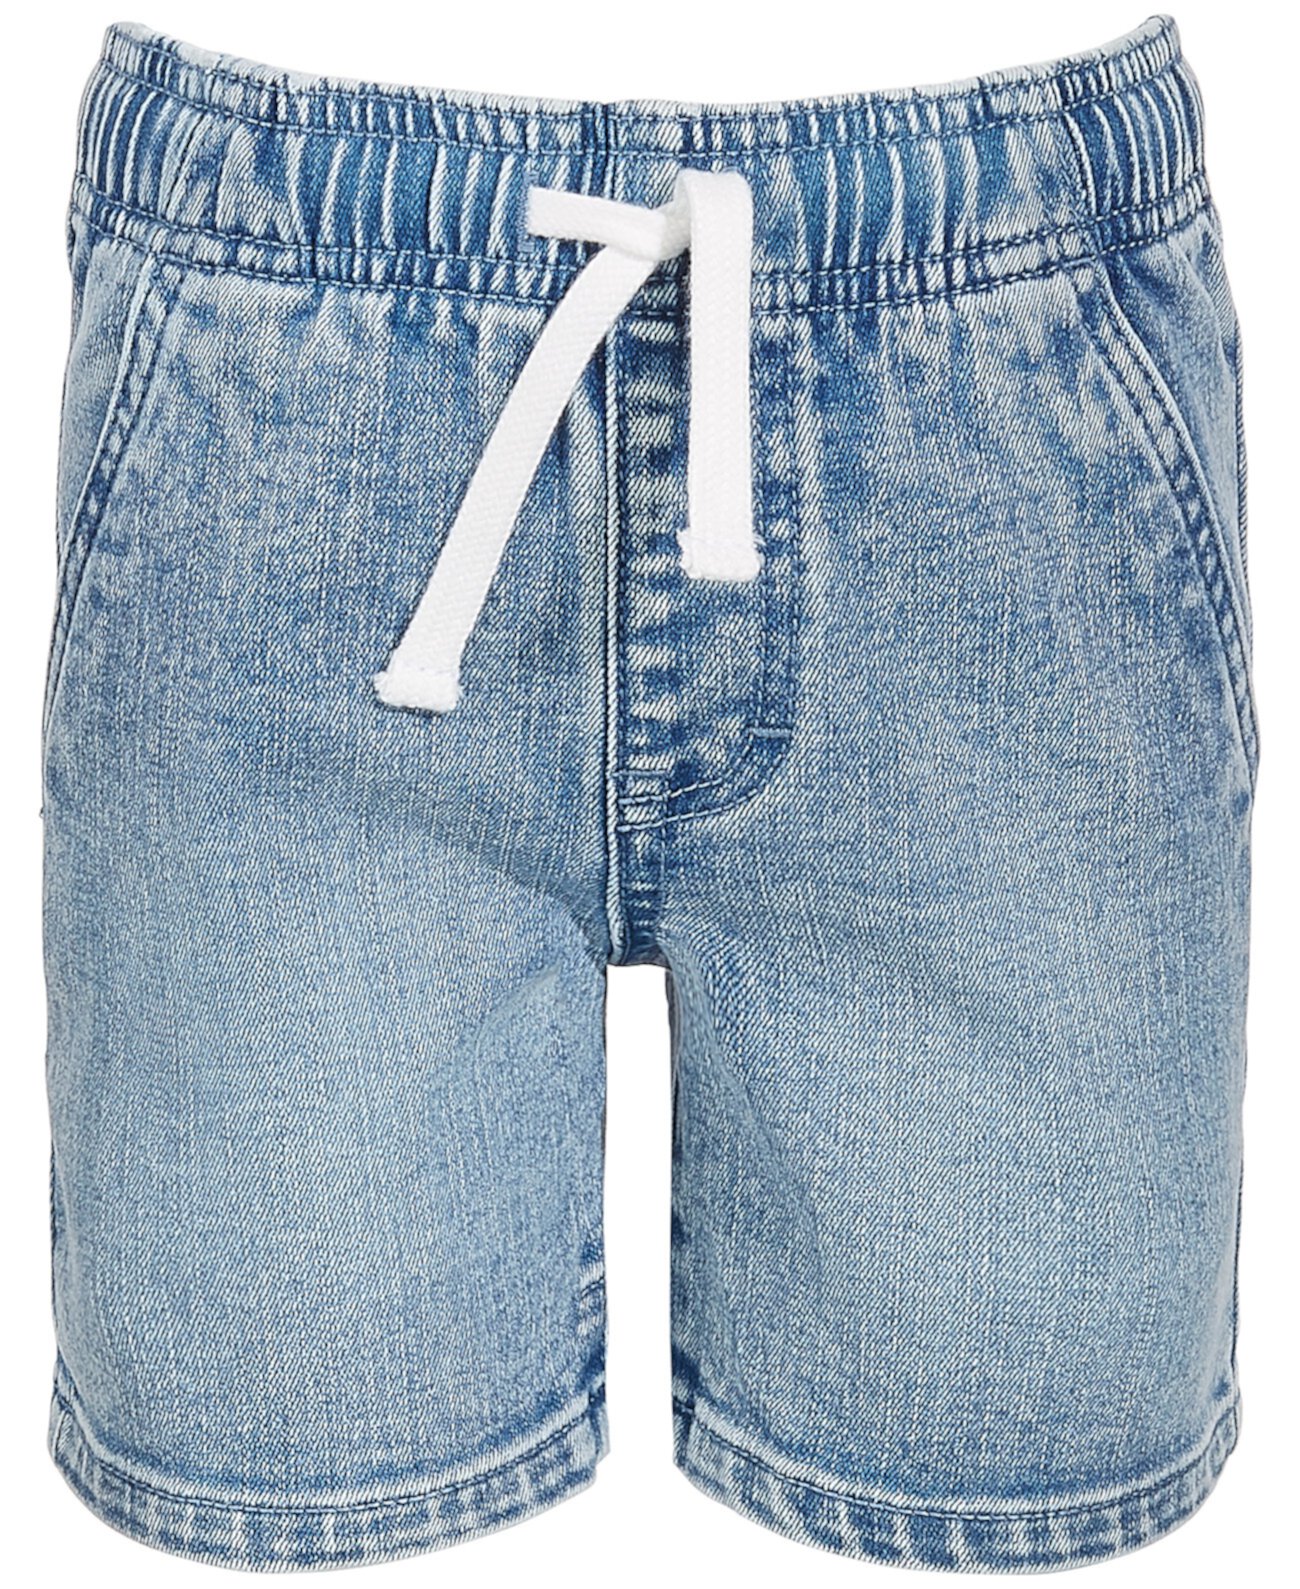 Светлые джинсовые шорты Little Boys Good Vibes, созданные для Macy's Epic Threads